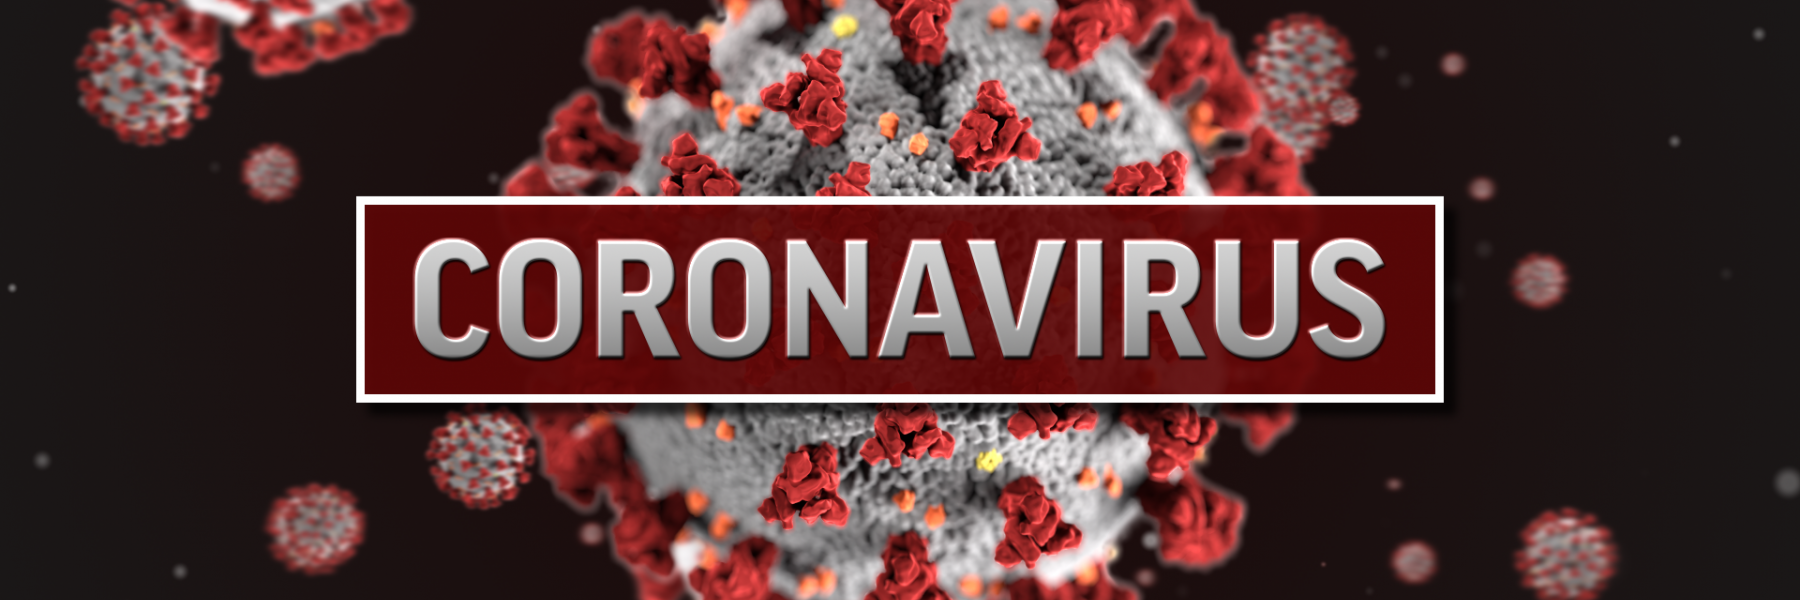 دراسات تؤكد فاعلية 5 منتجات للوقاية ولتخفيف أعراض فيروس كورونا المستجد